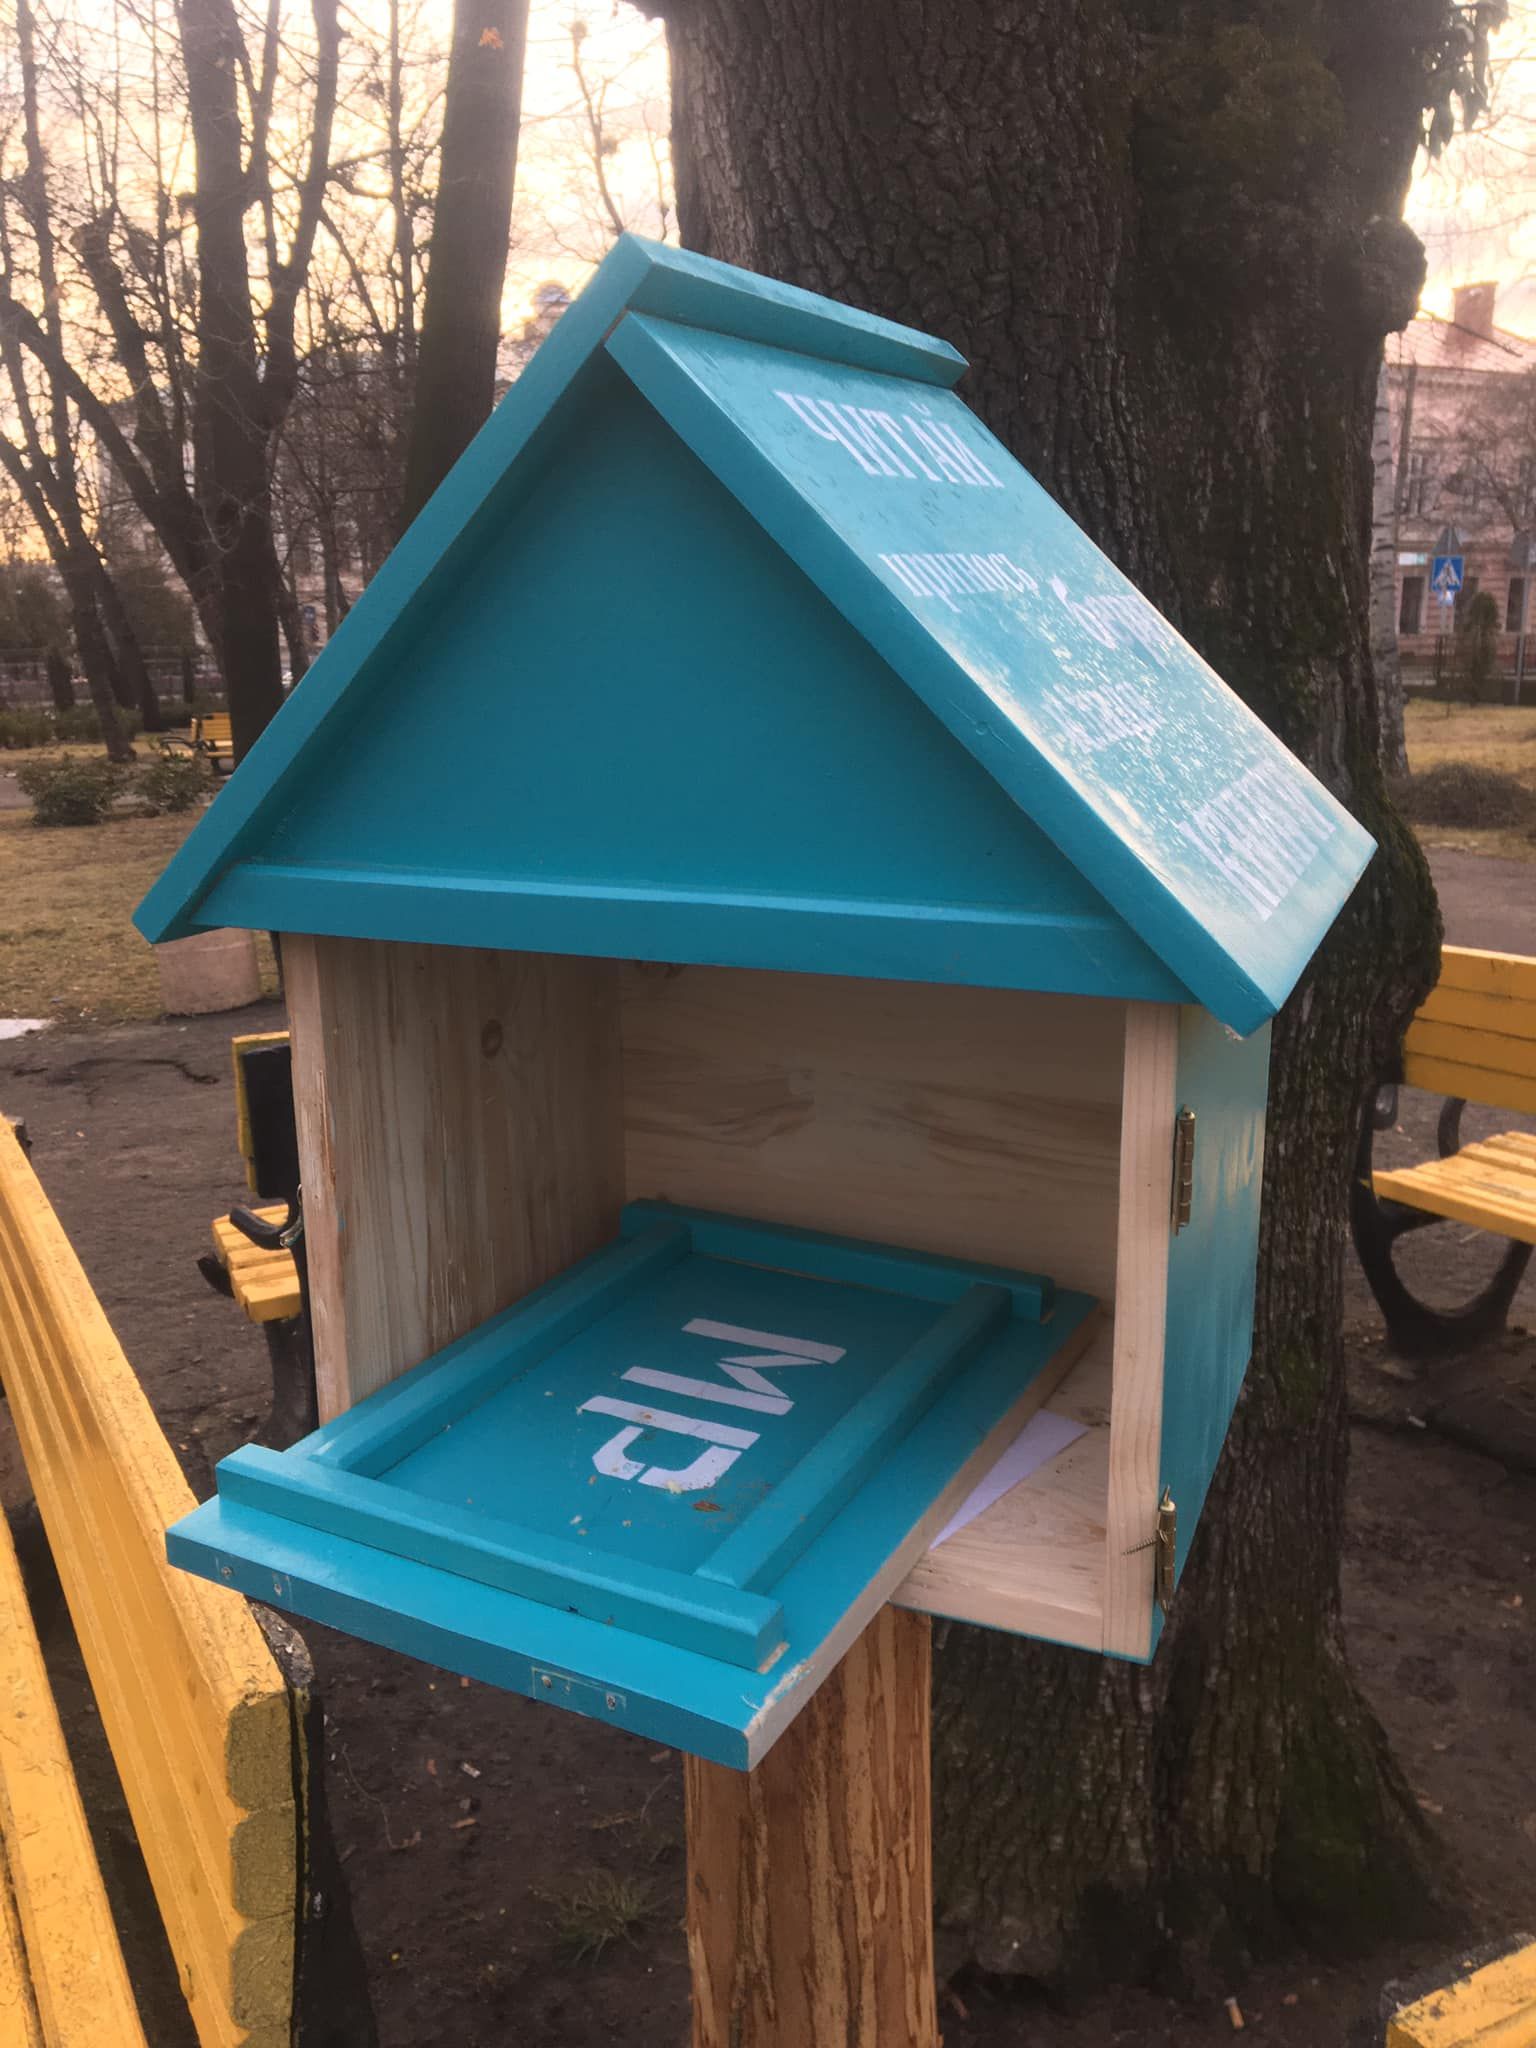 "Не для наших людей": в Черновцах вандалы разгромили книжные домики